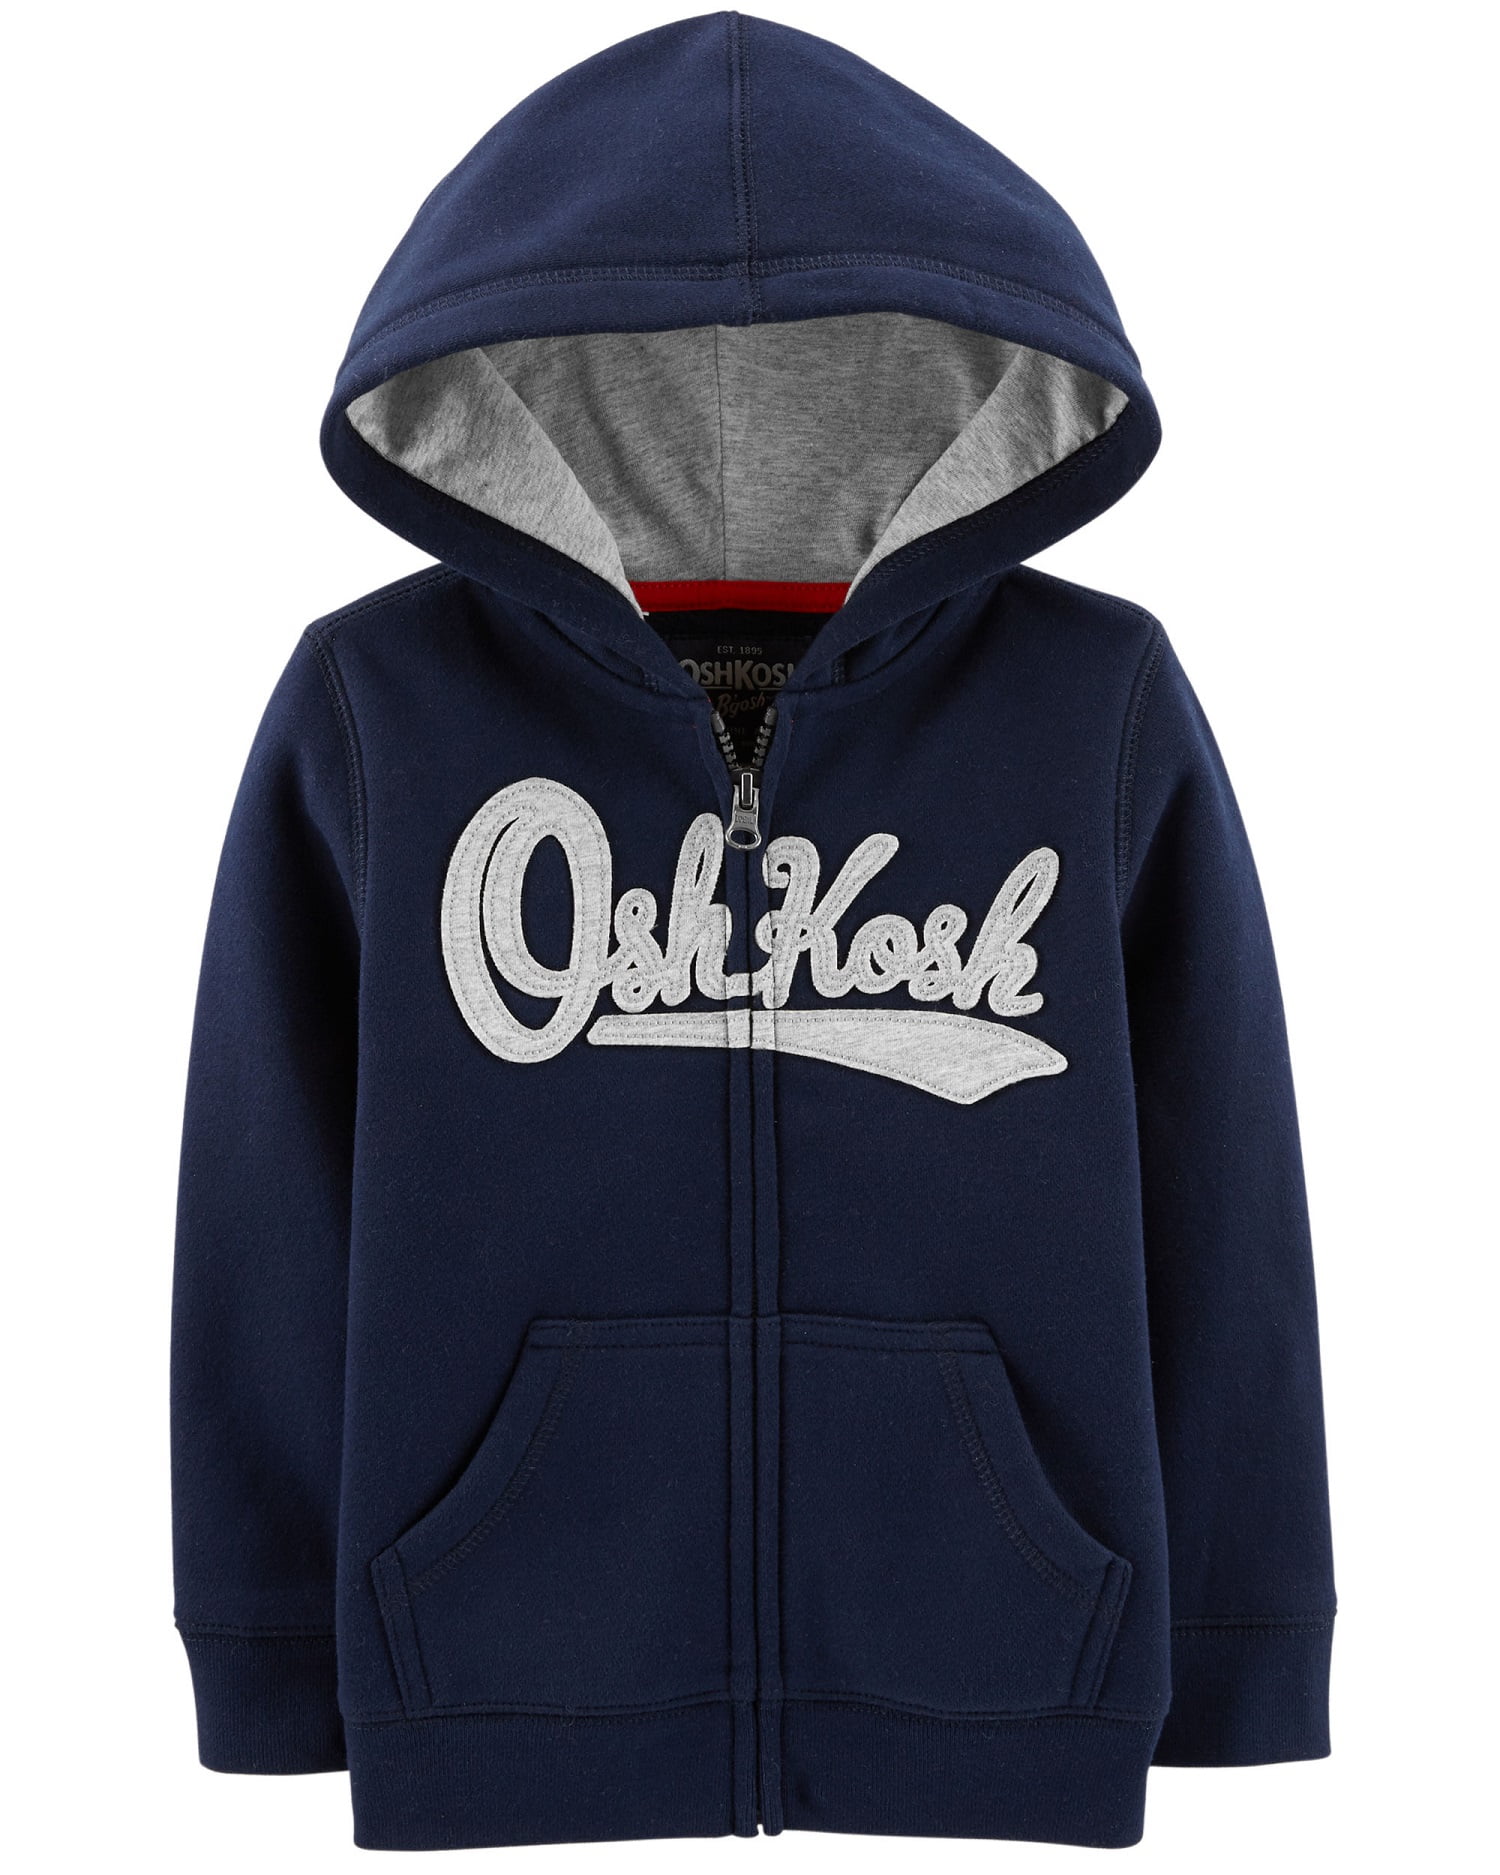 OshKosh B'Gosh Infant Boys Zip-Up OshKosh Logo Hoodie Navy Blue NWT jacket